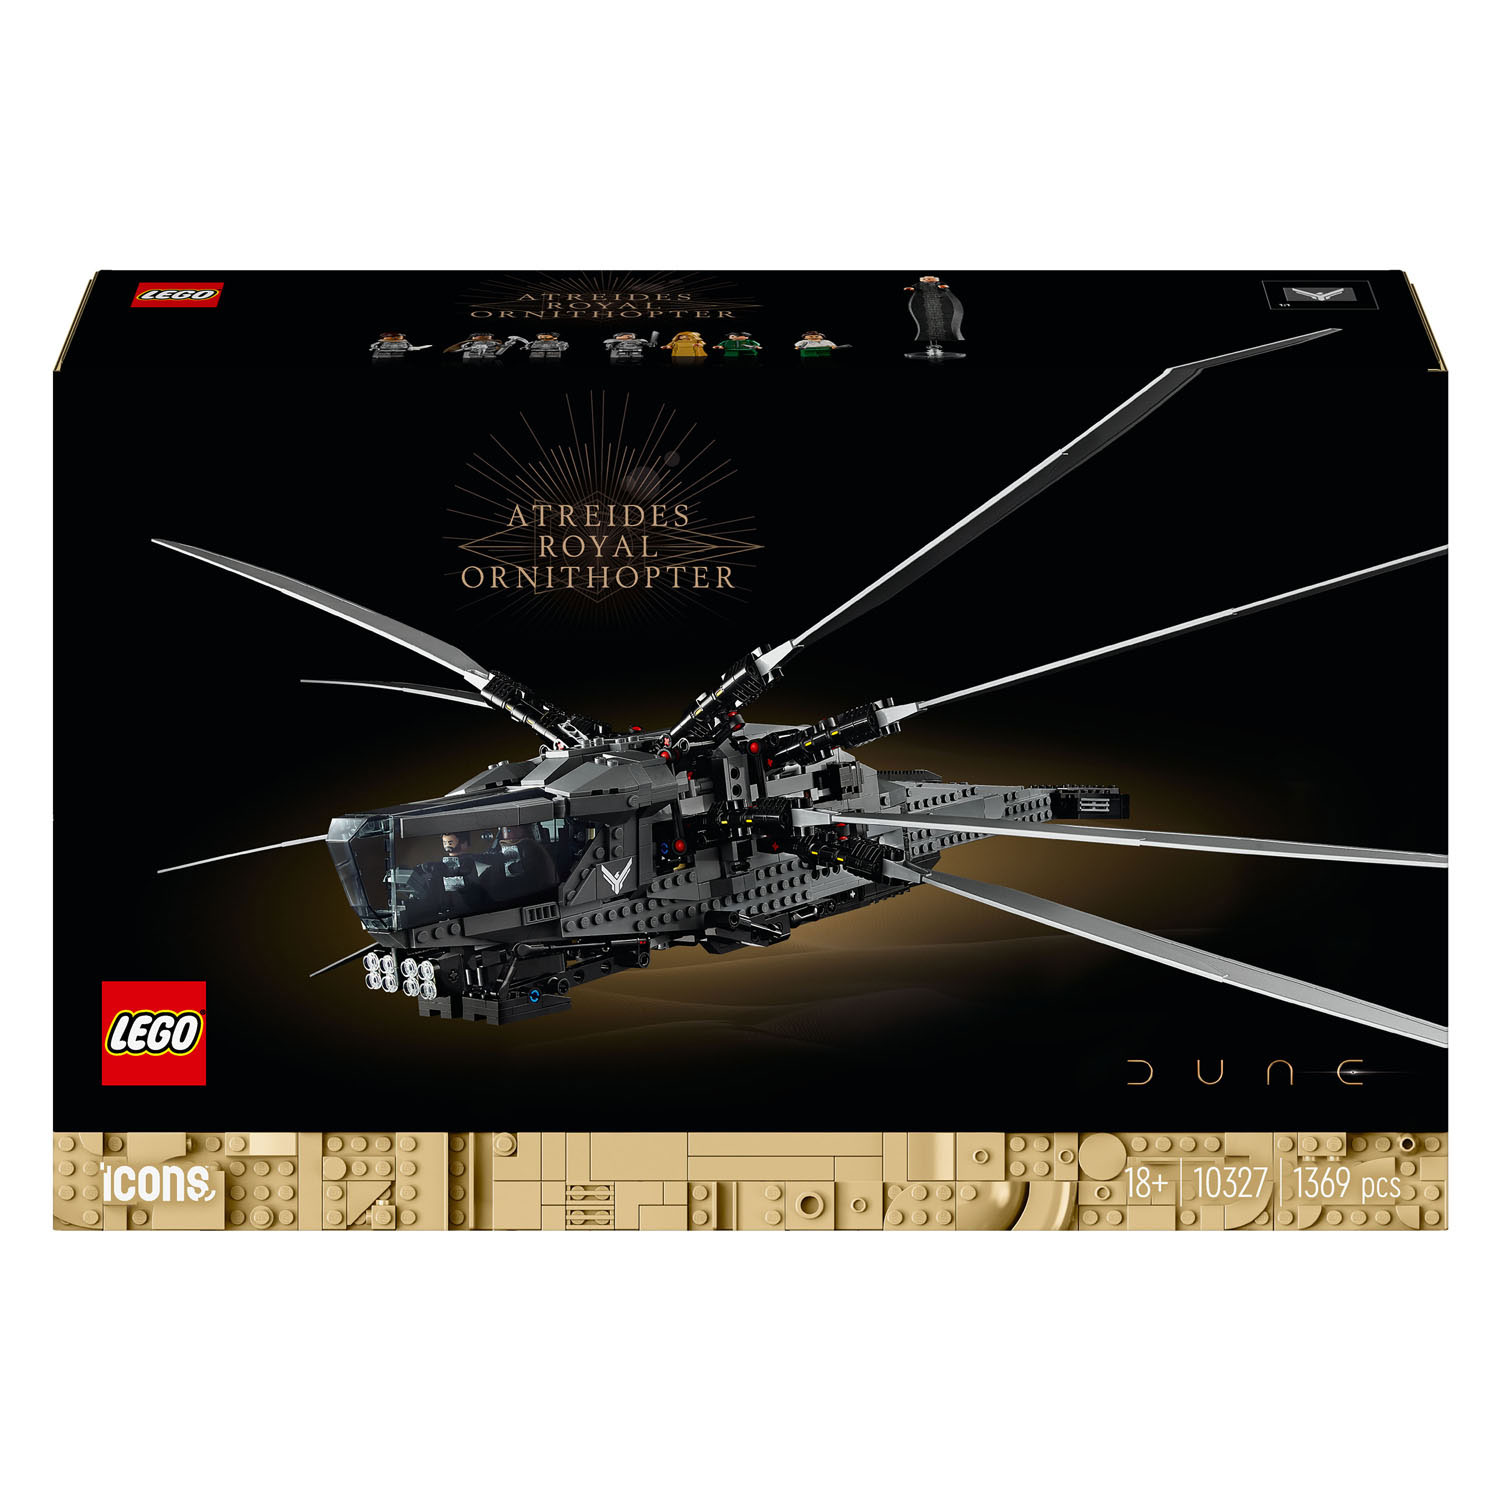 LEGO ICONS 10327 L'Ornithoptère Royal des Dune Atréides